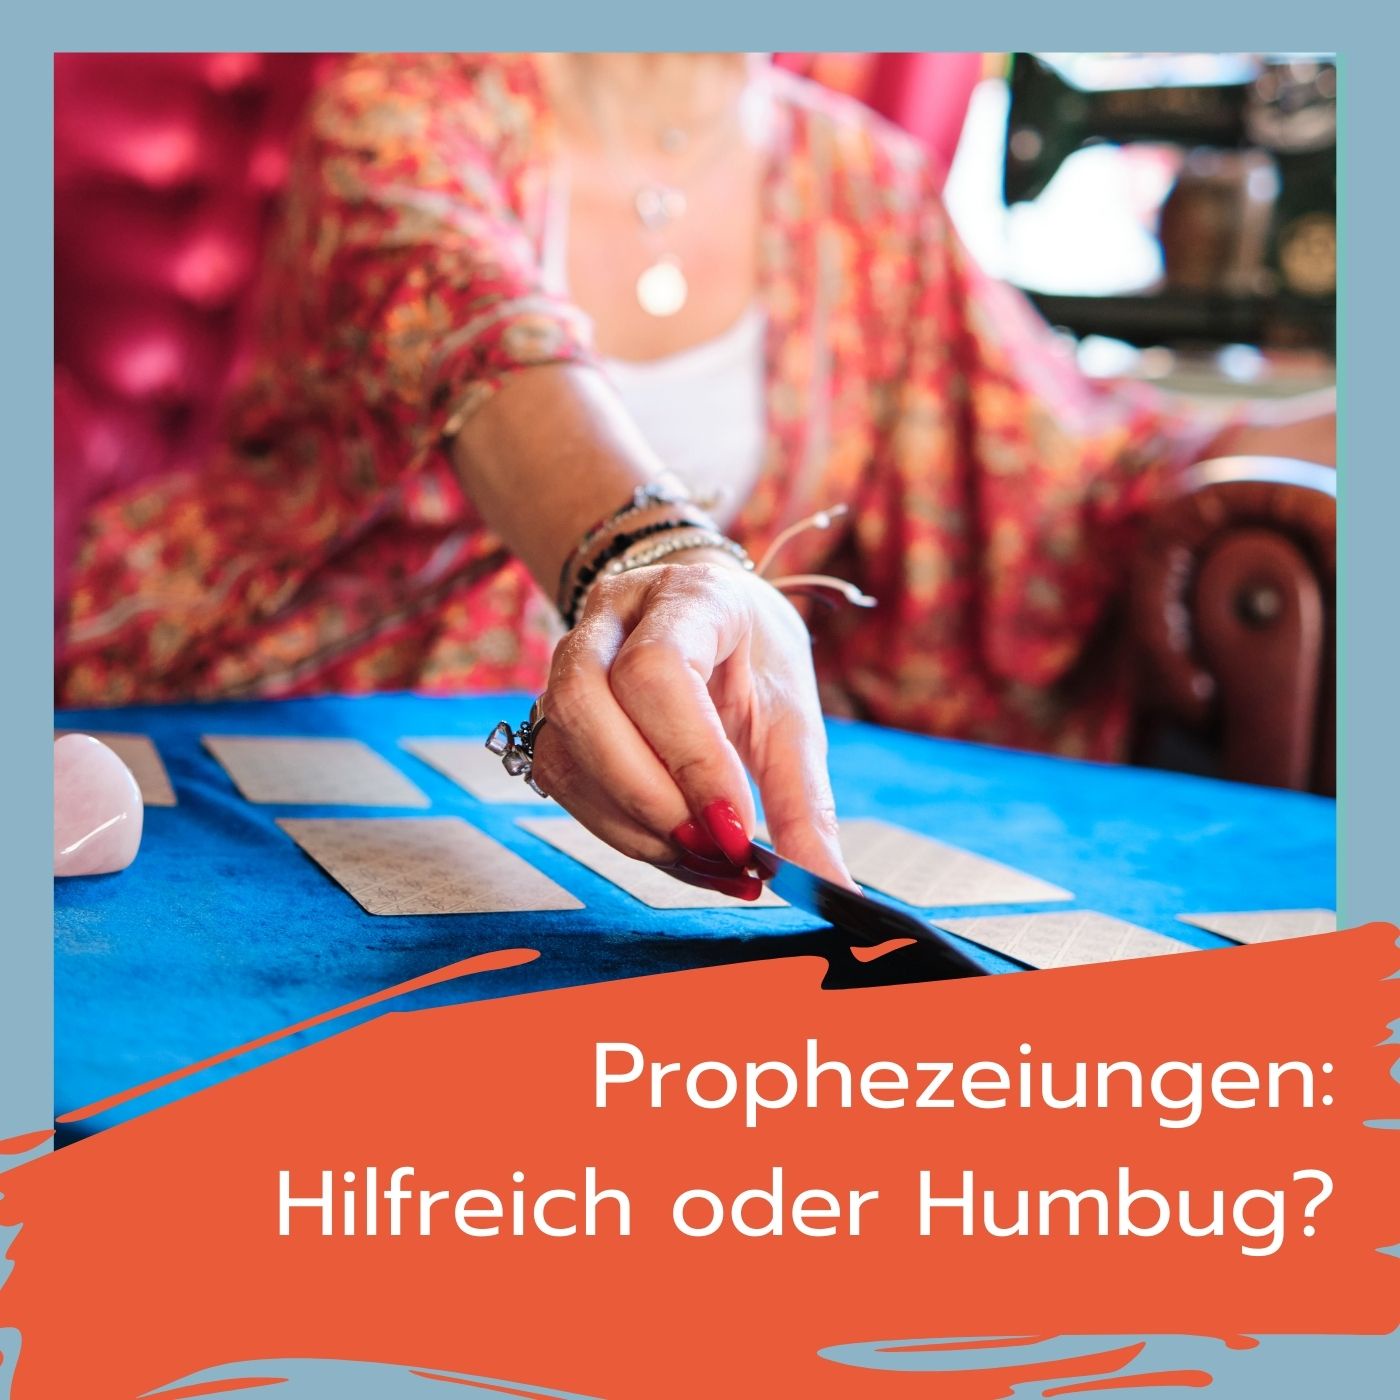 Prophezeiungen: Hilfreich oder Humbug?